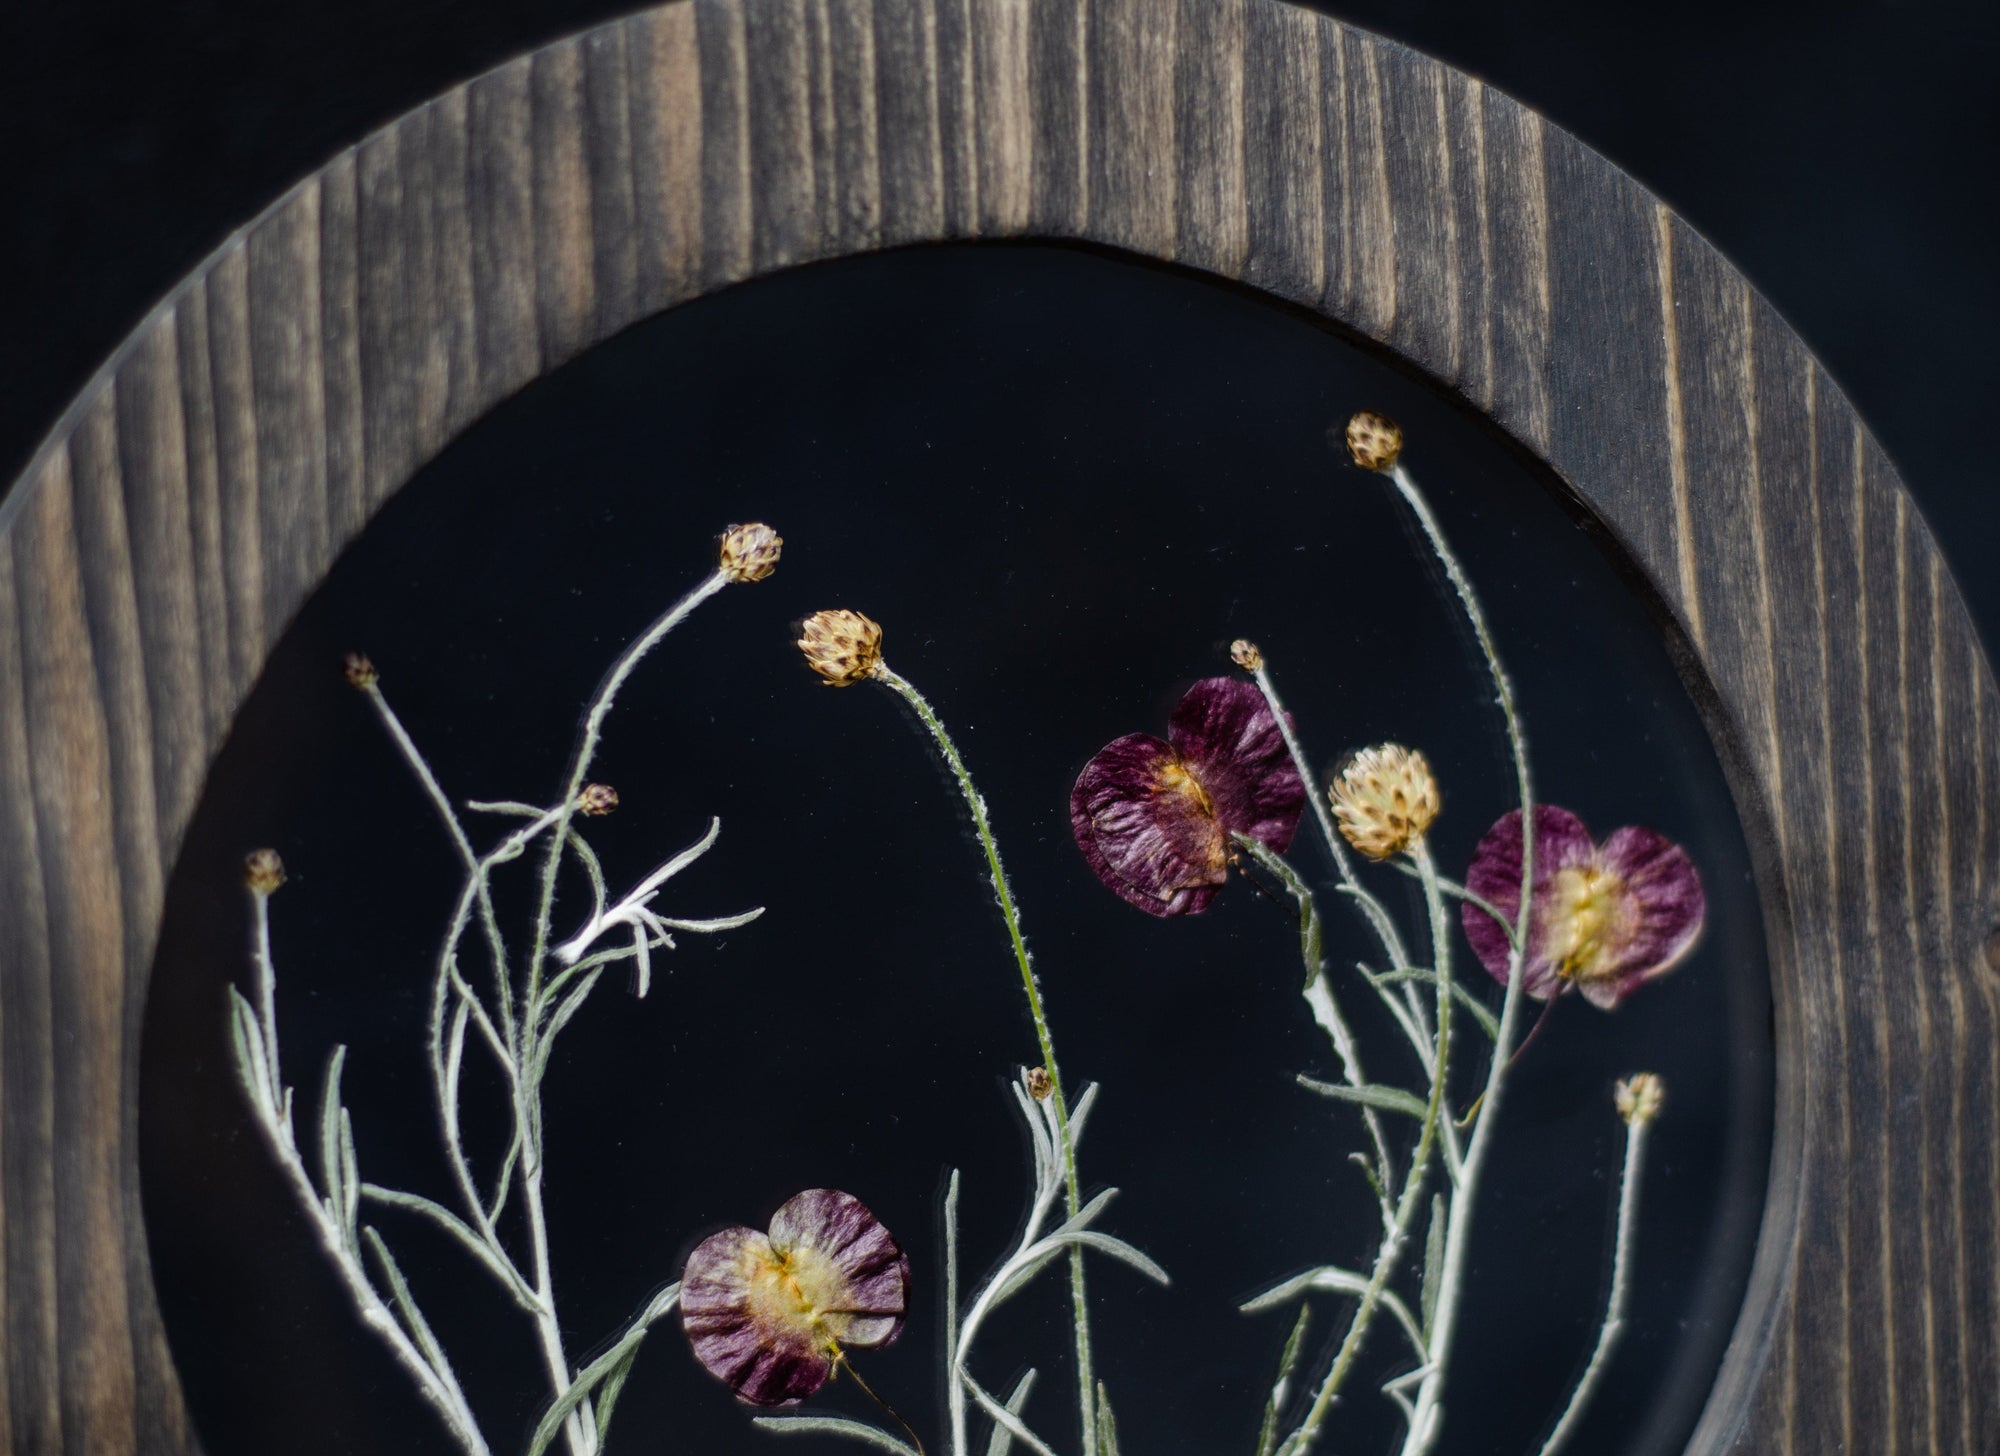 Pressed Flower Frames – Pip & Rose Design